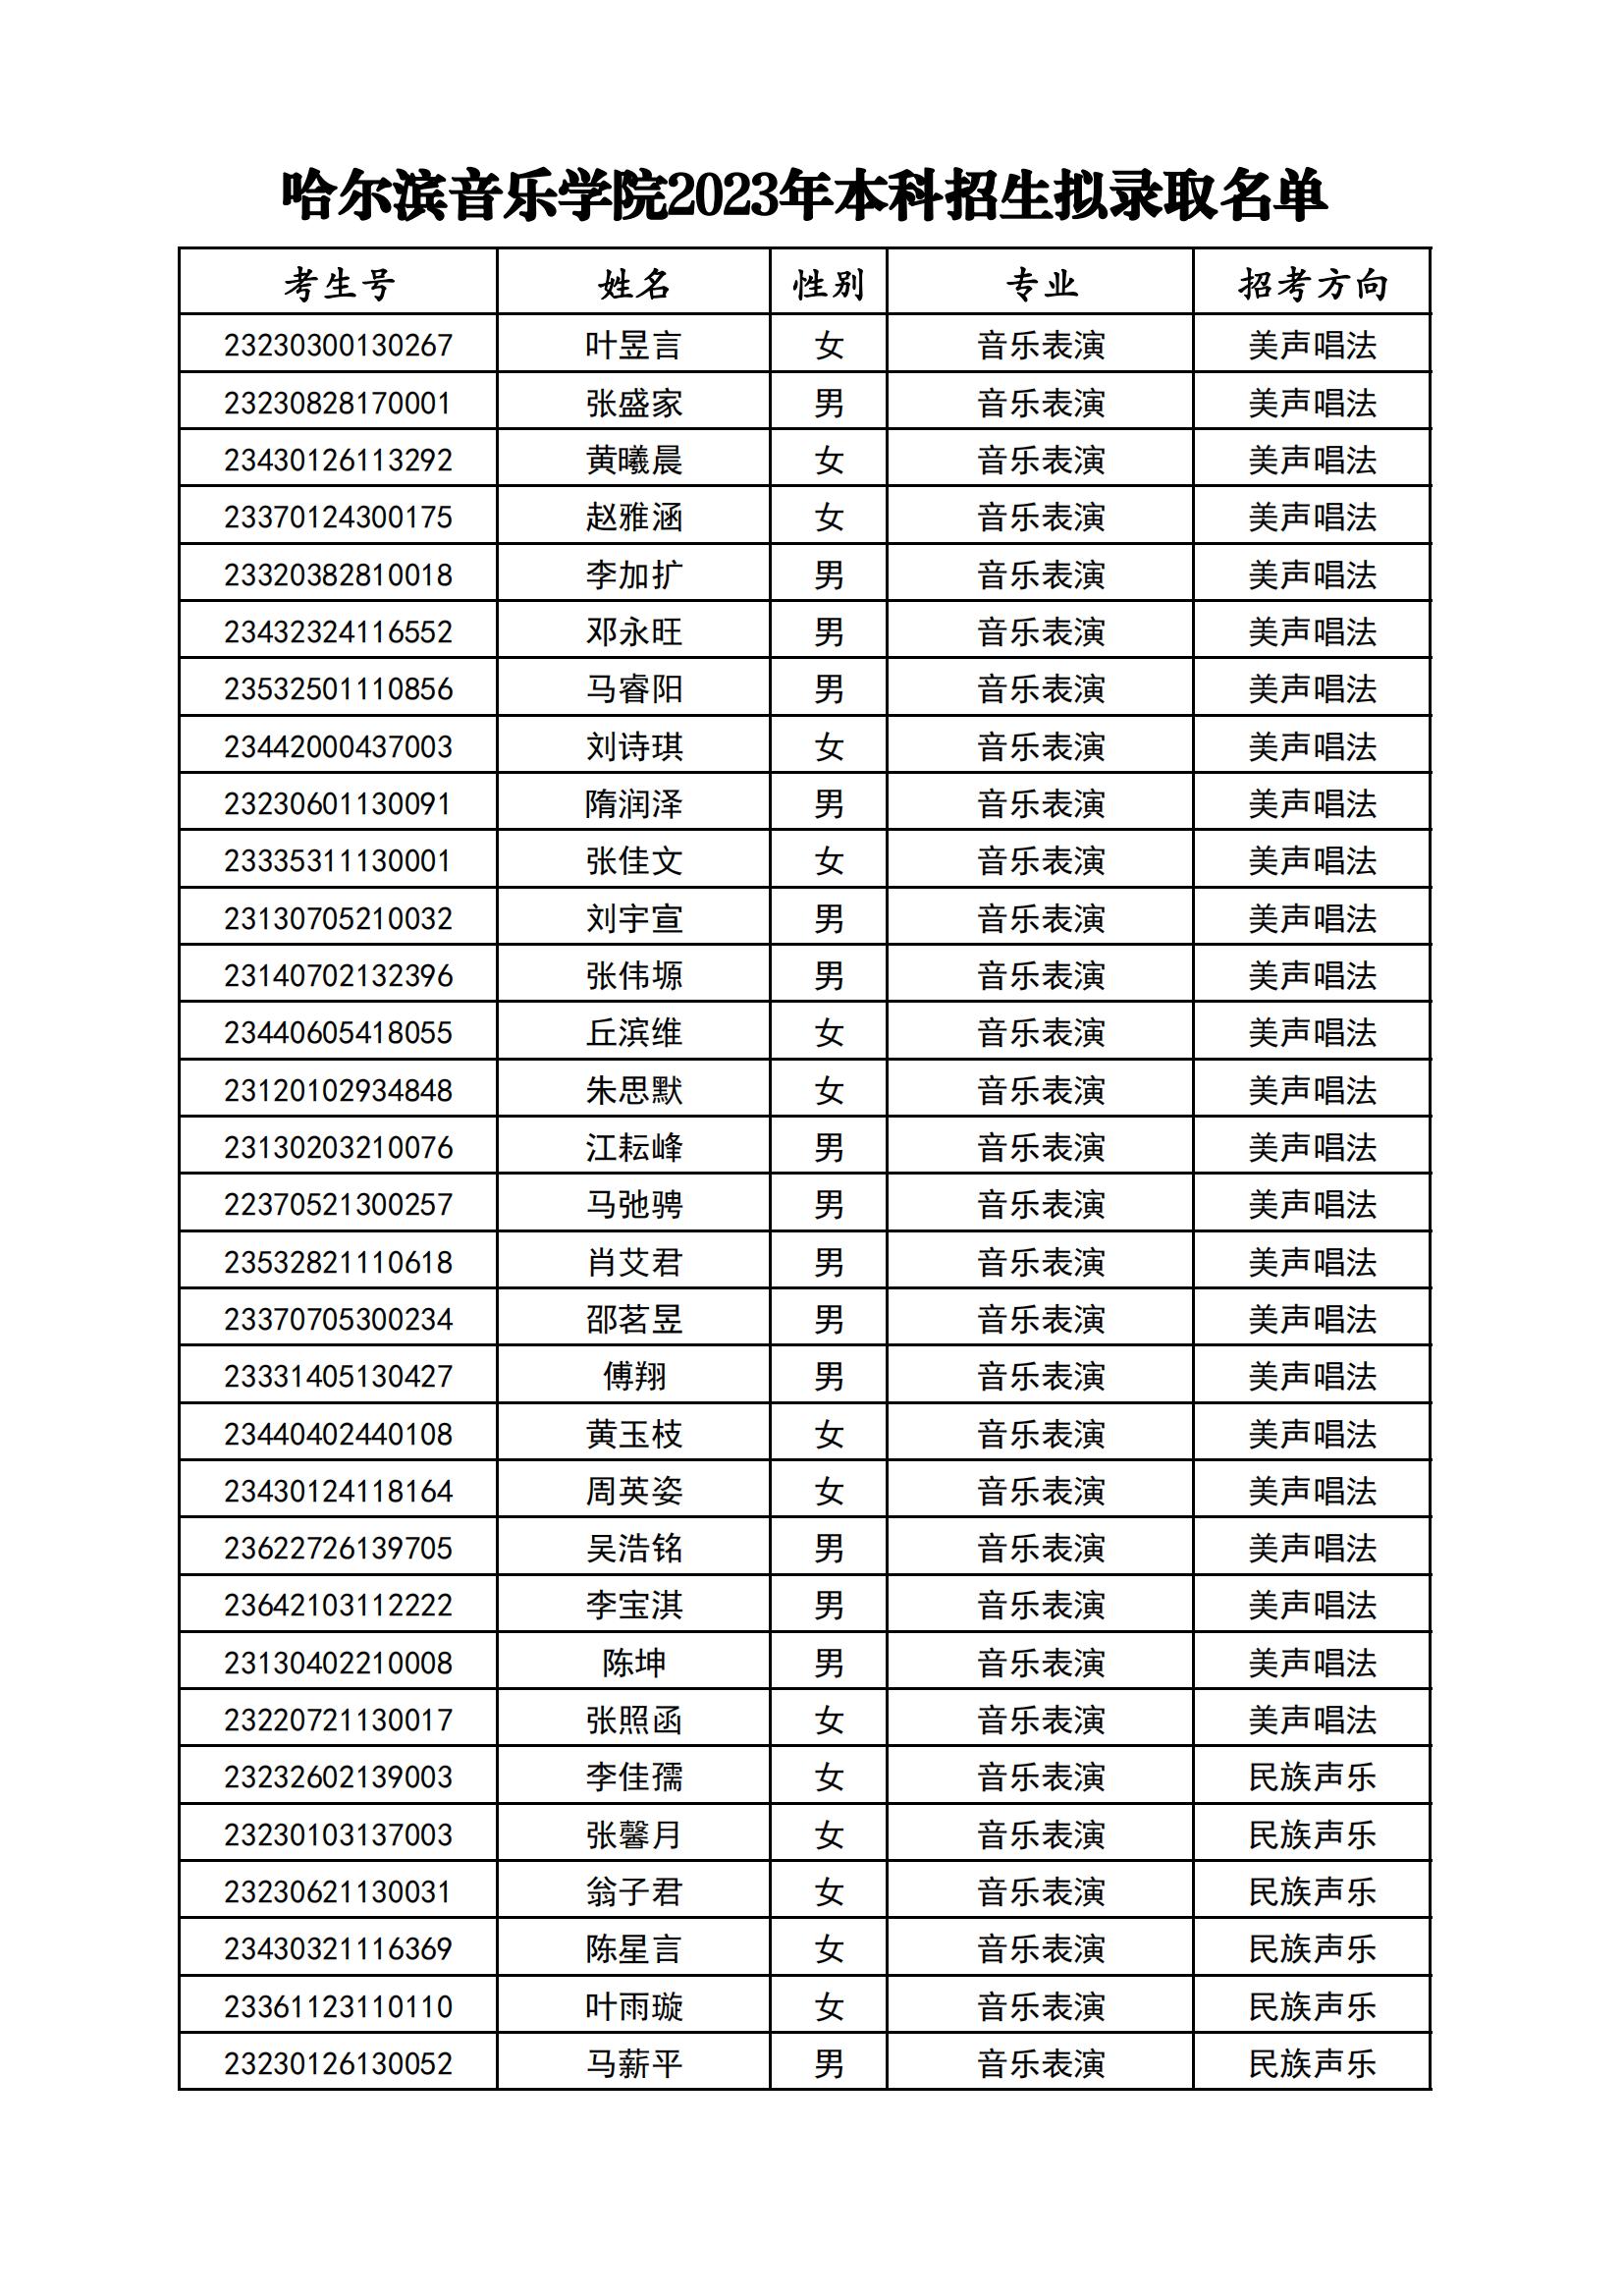 附件2：哈尔滨音乐学院2023年本科招生拟录取名单_00.jpg